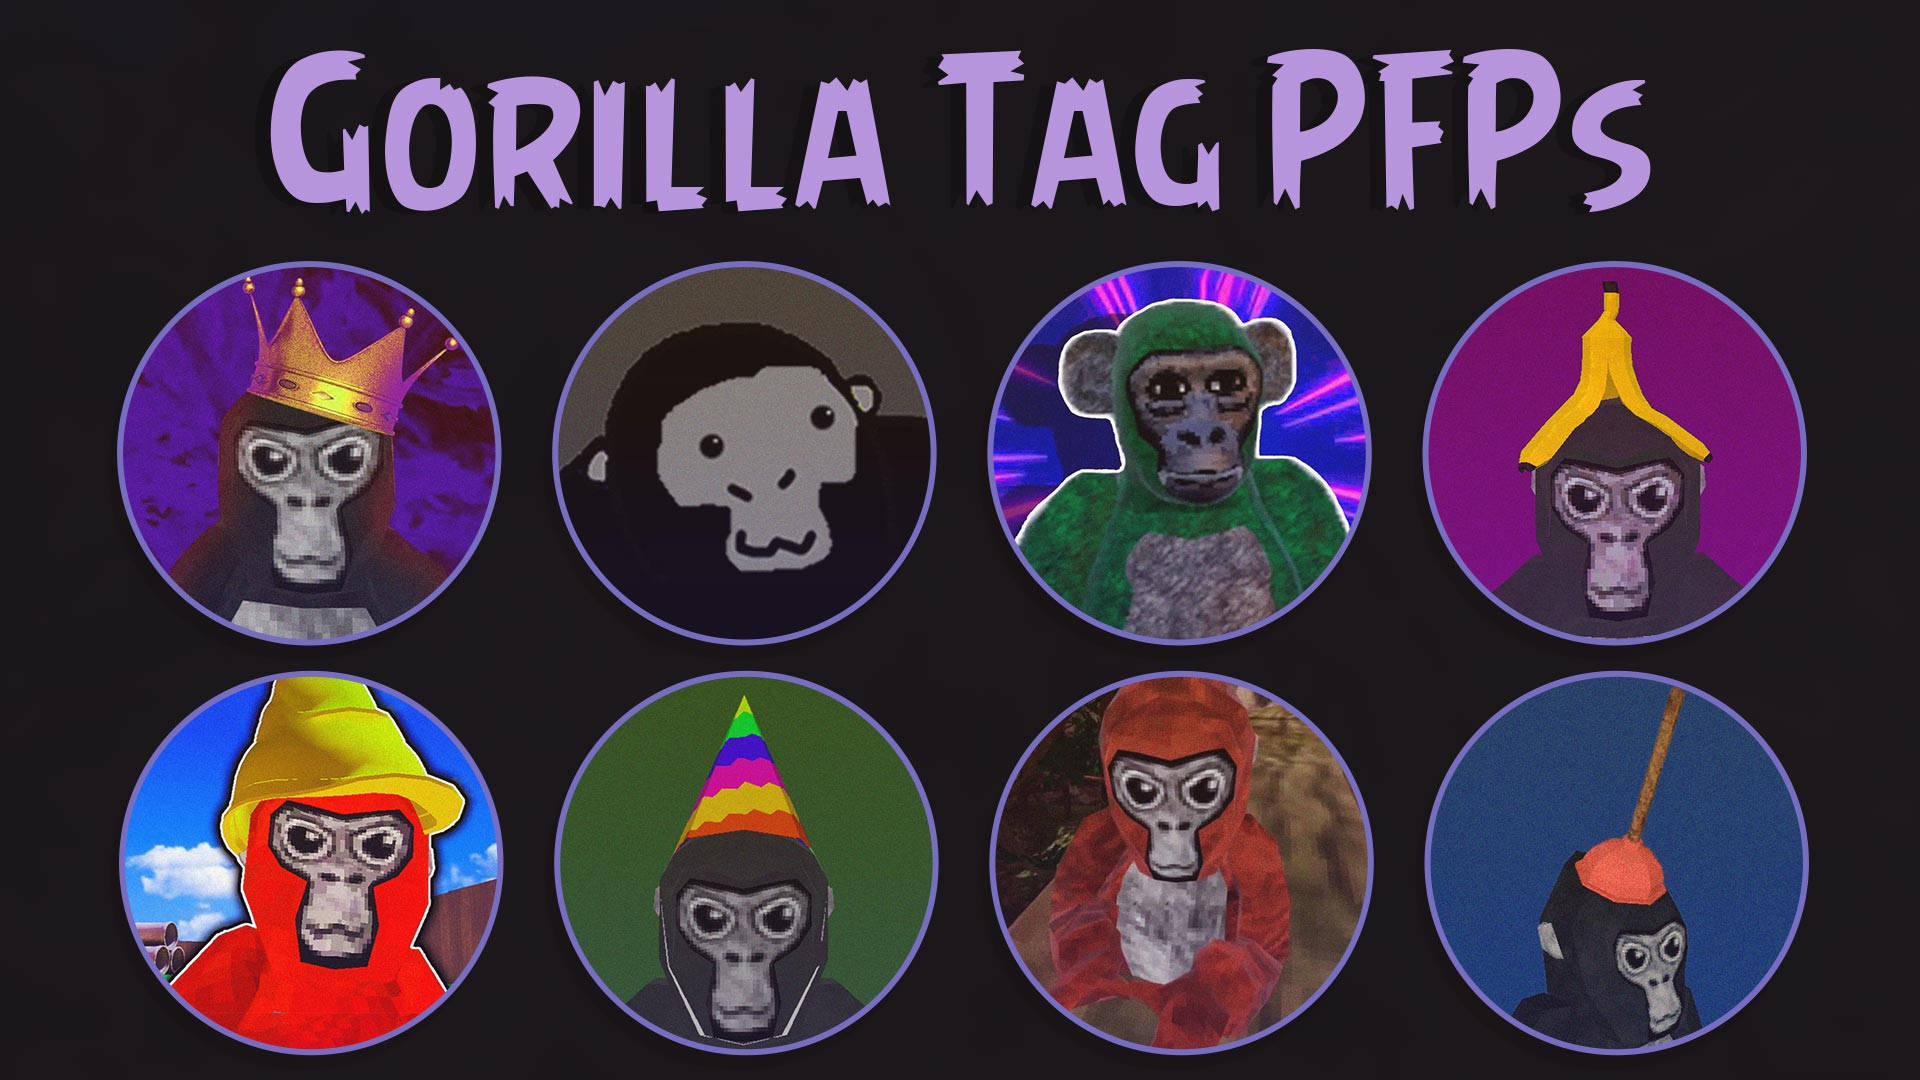 Avatars Gorilla Tag Pfp Wallpaper